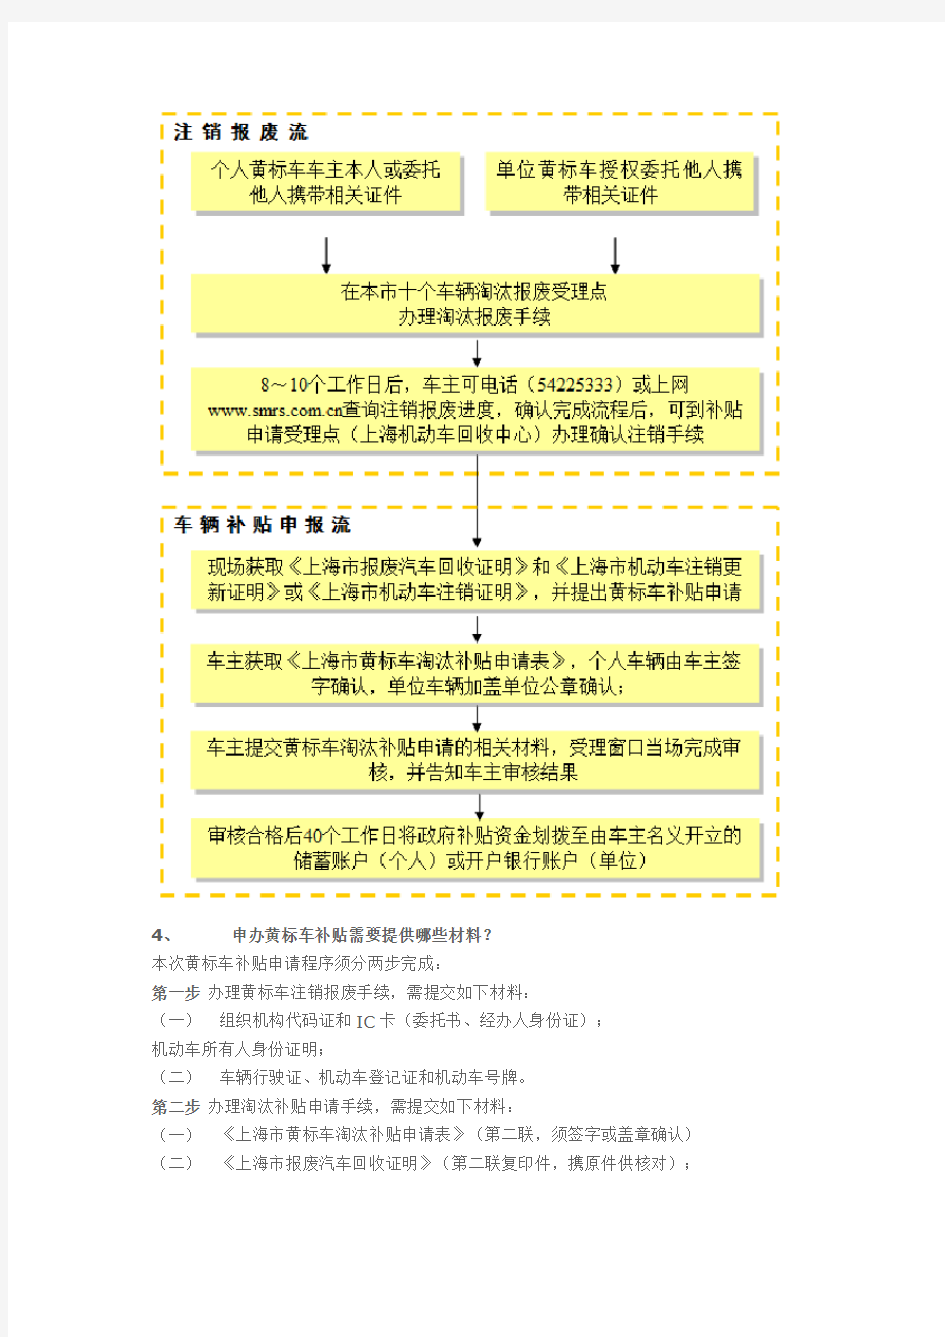 上海黄标车淘汰政策和申请补贴细则